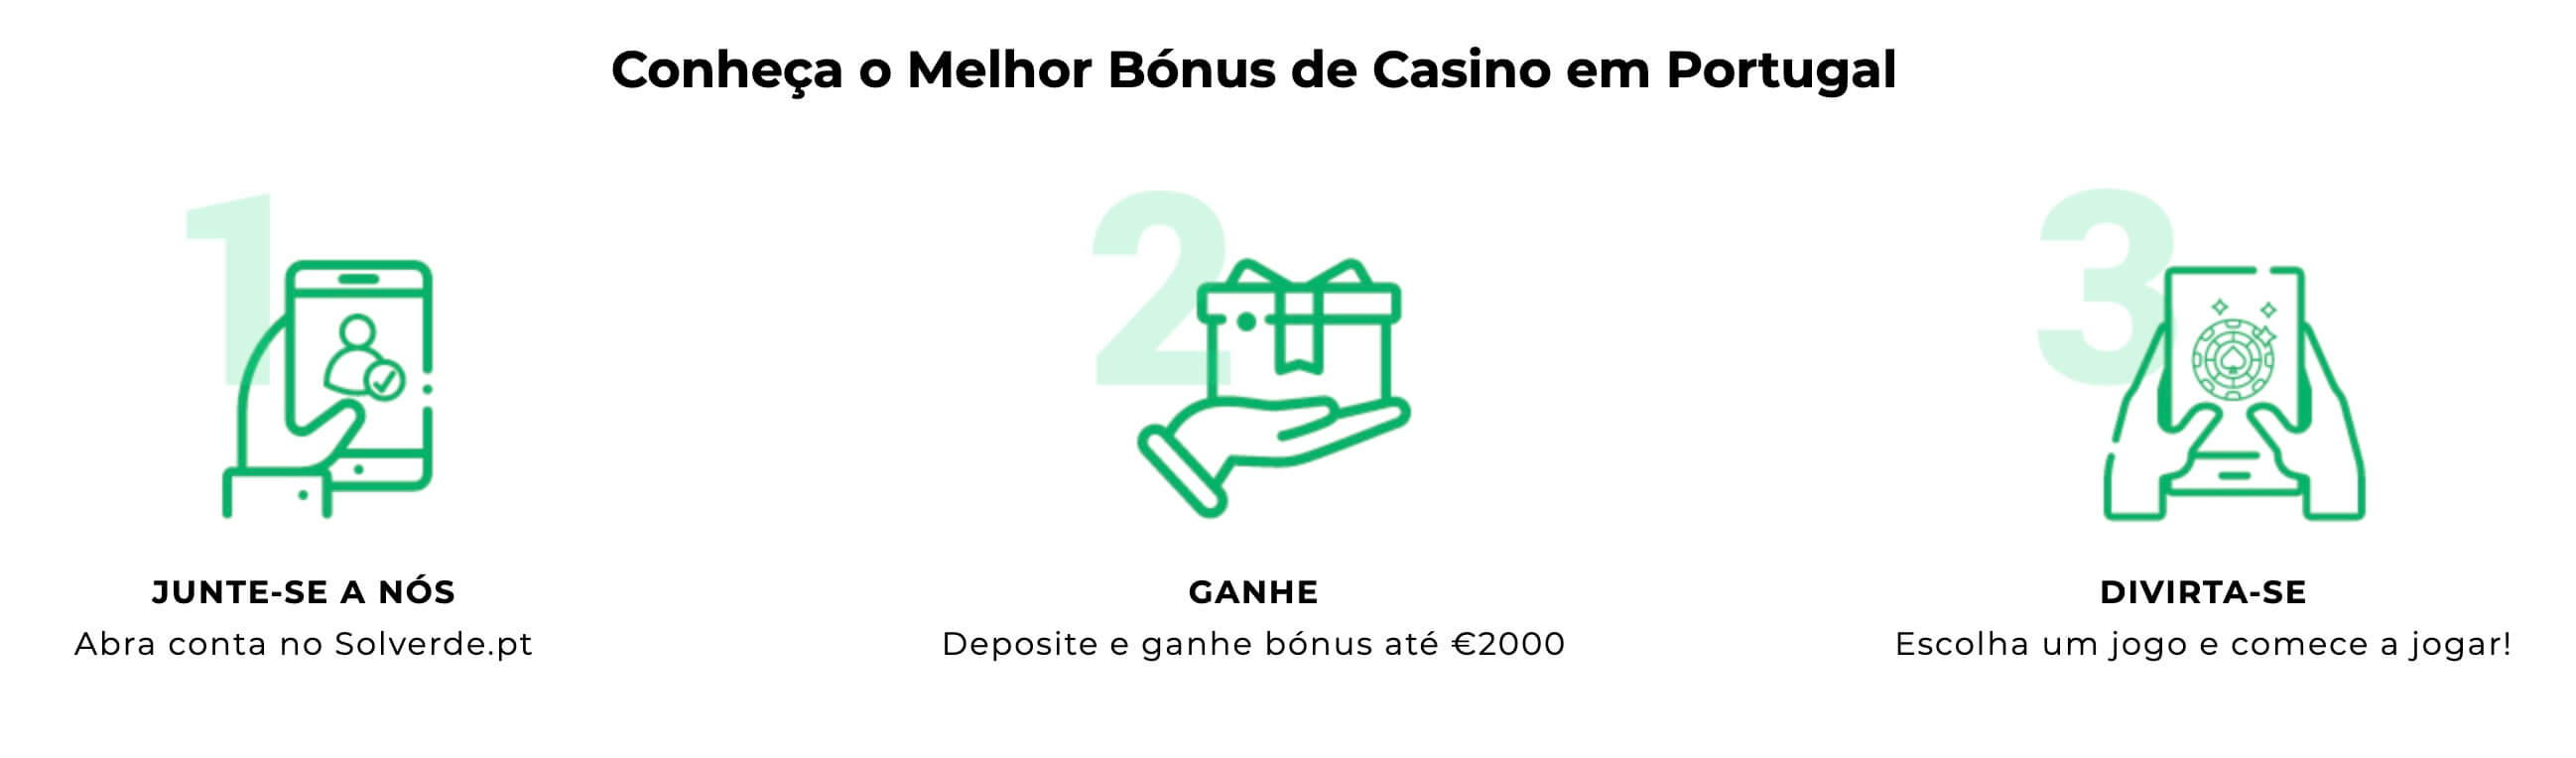 5 melhores maneiras de vender casino 